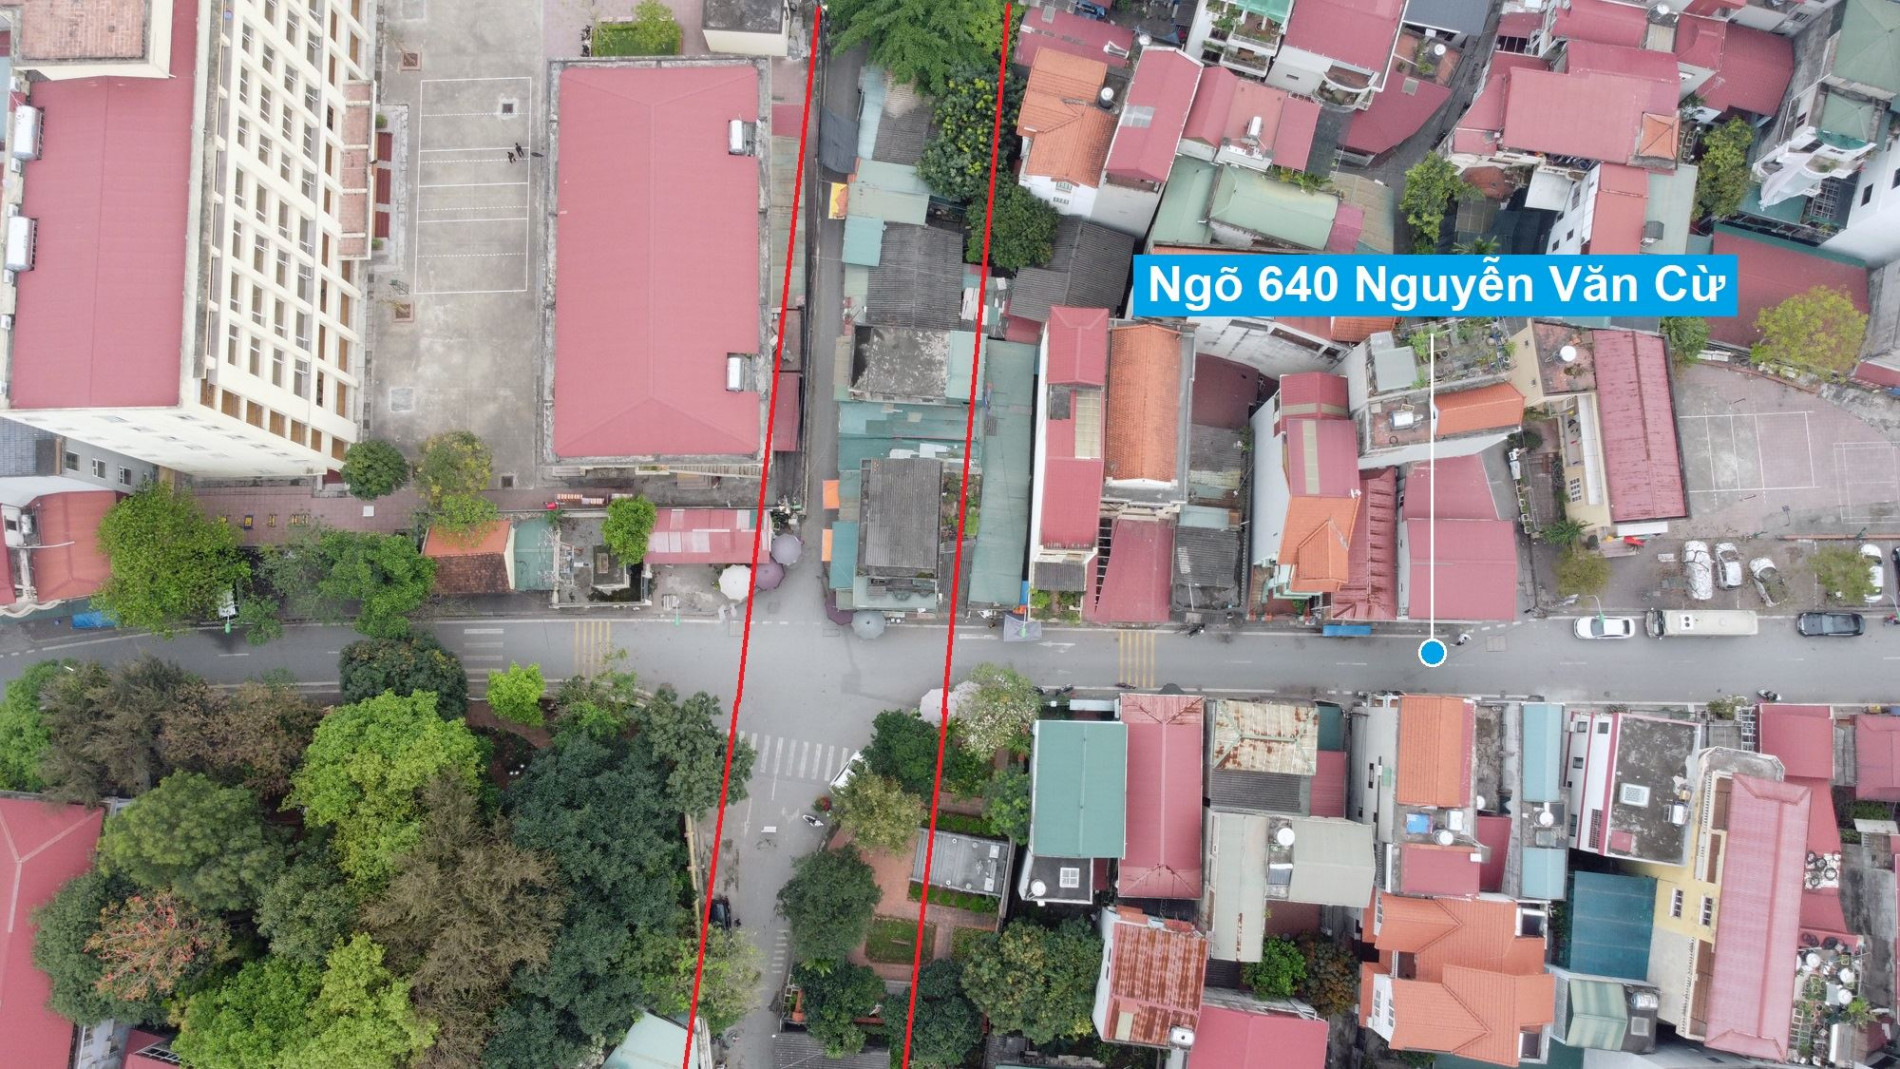 Những khu đất sắp thu hồi để mở đường ở phường Gia Thụy, Long Biên, Hà Nội (phần 1)